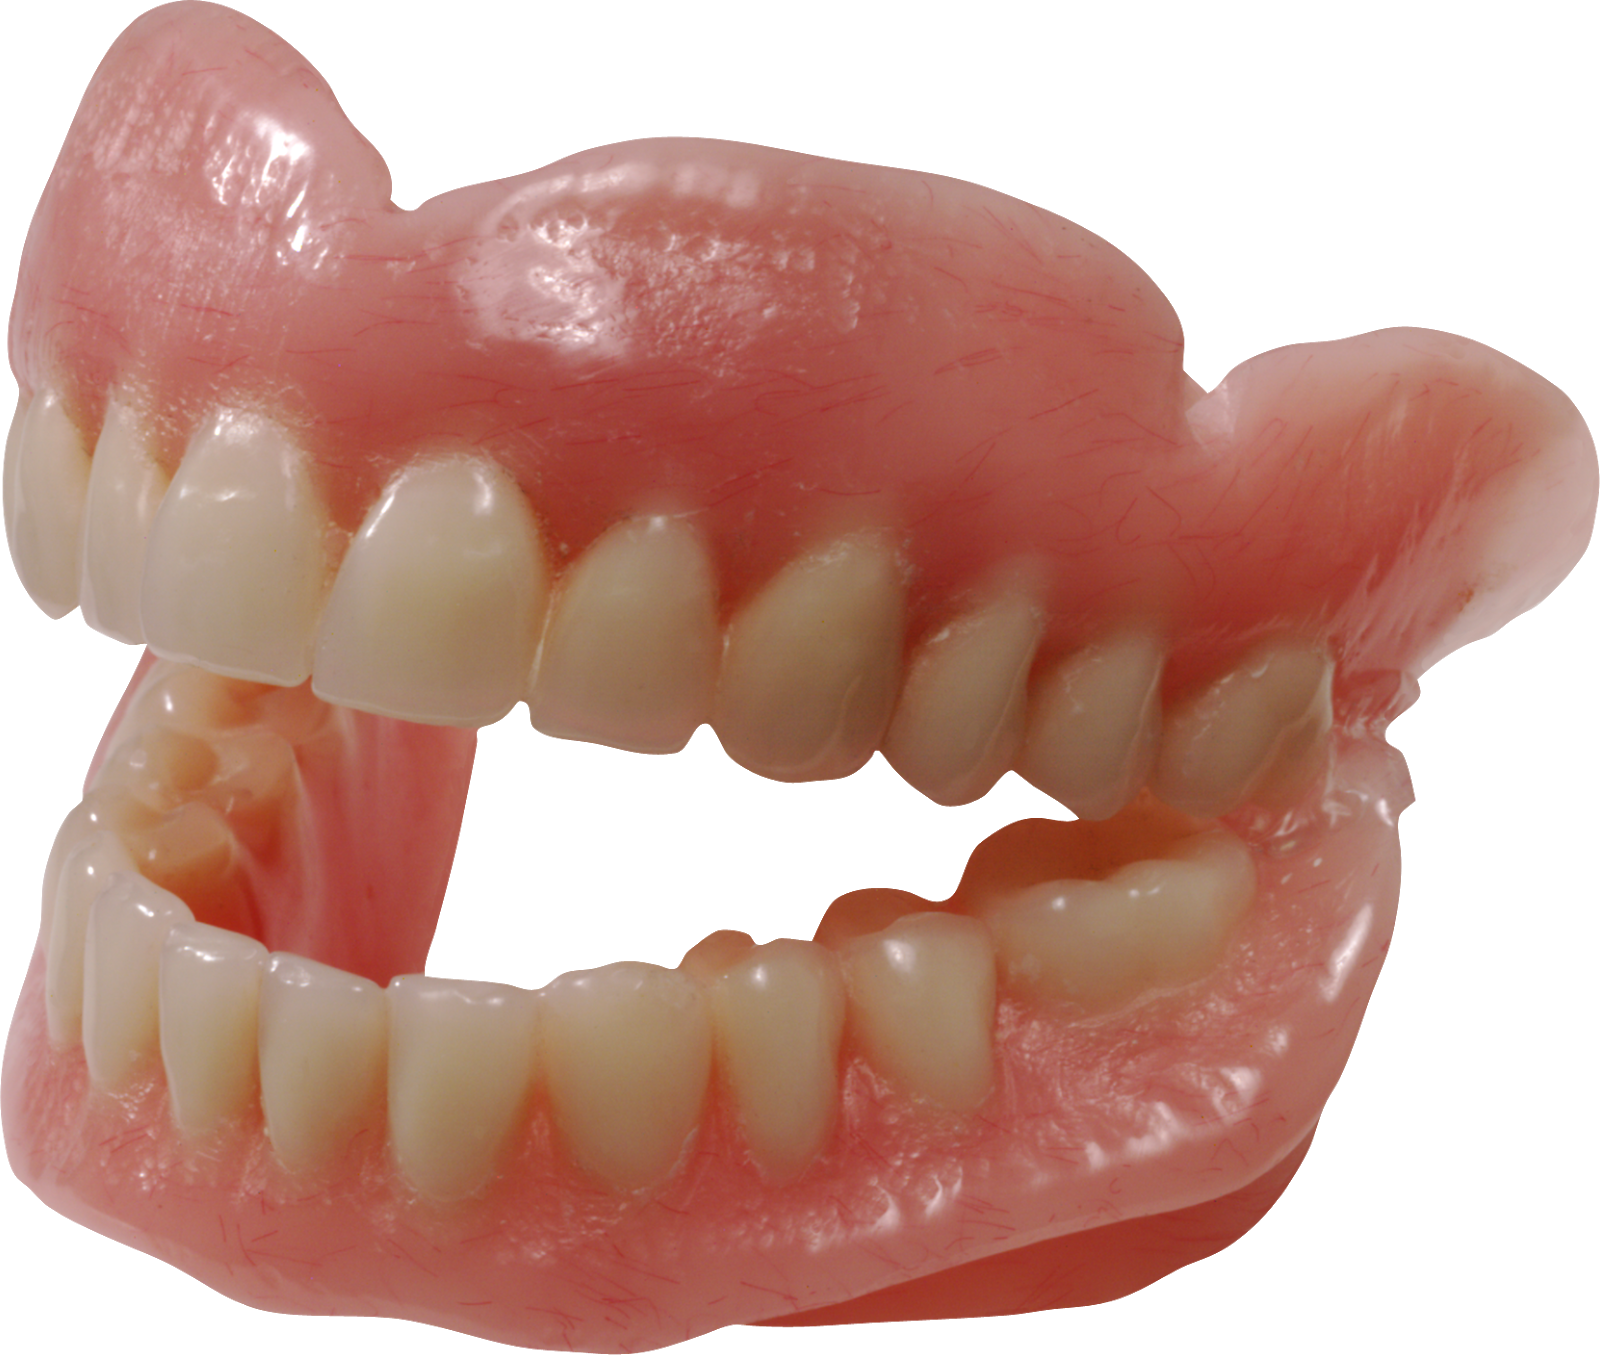 Dentistry dentures clip art. 